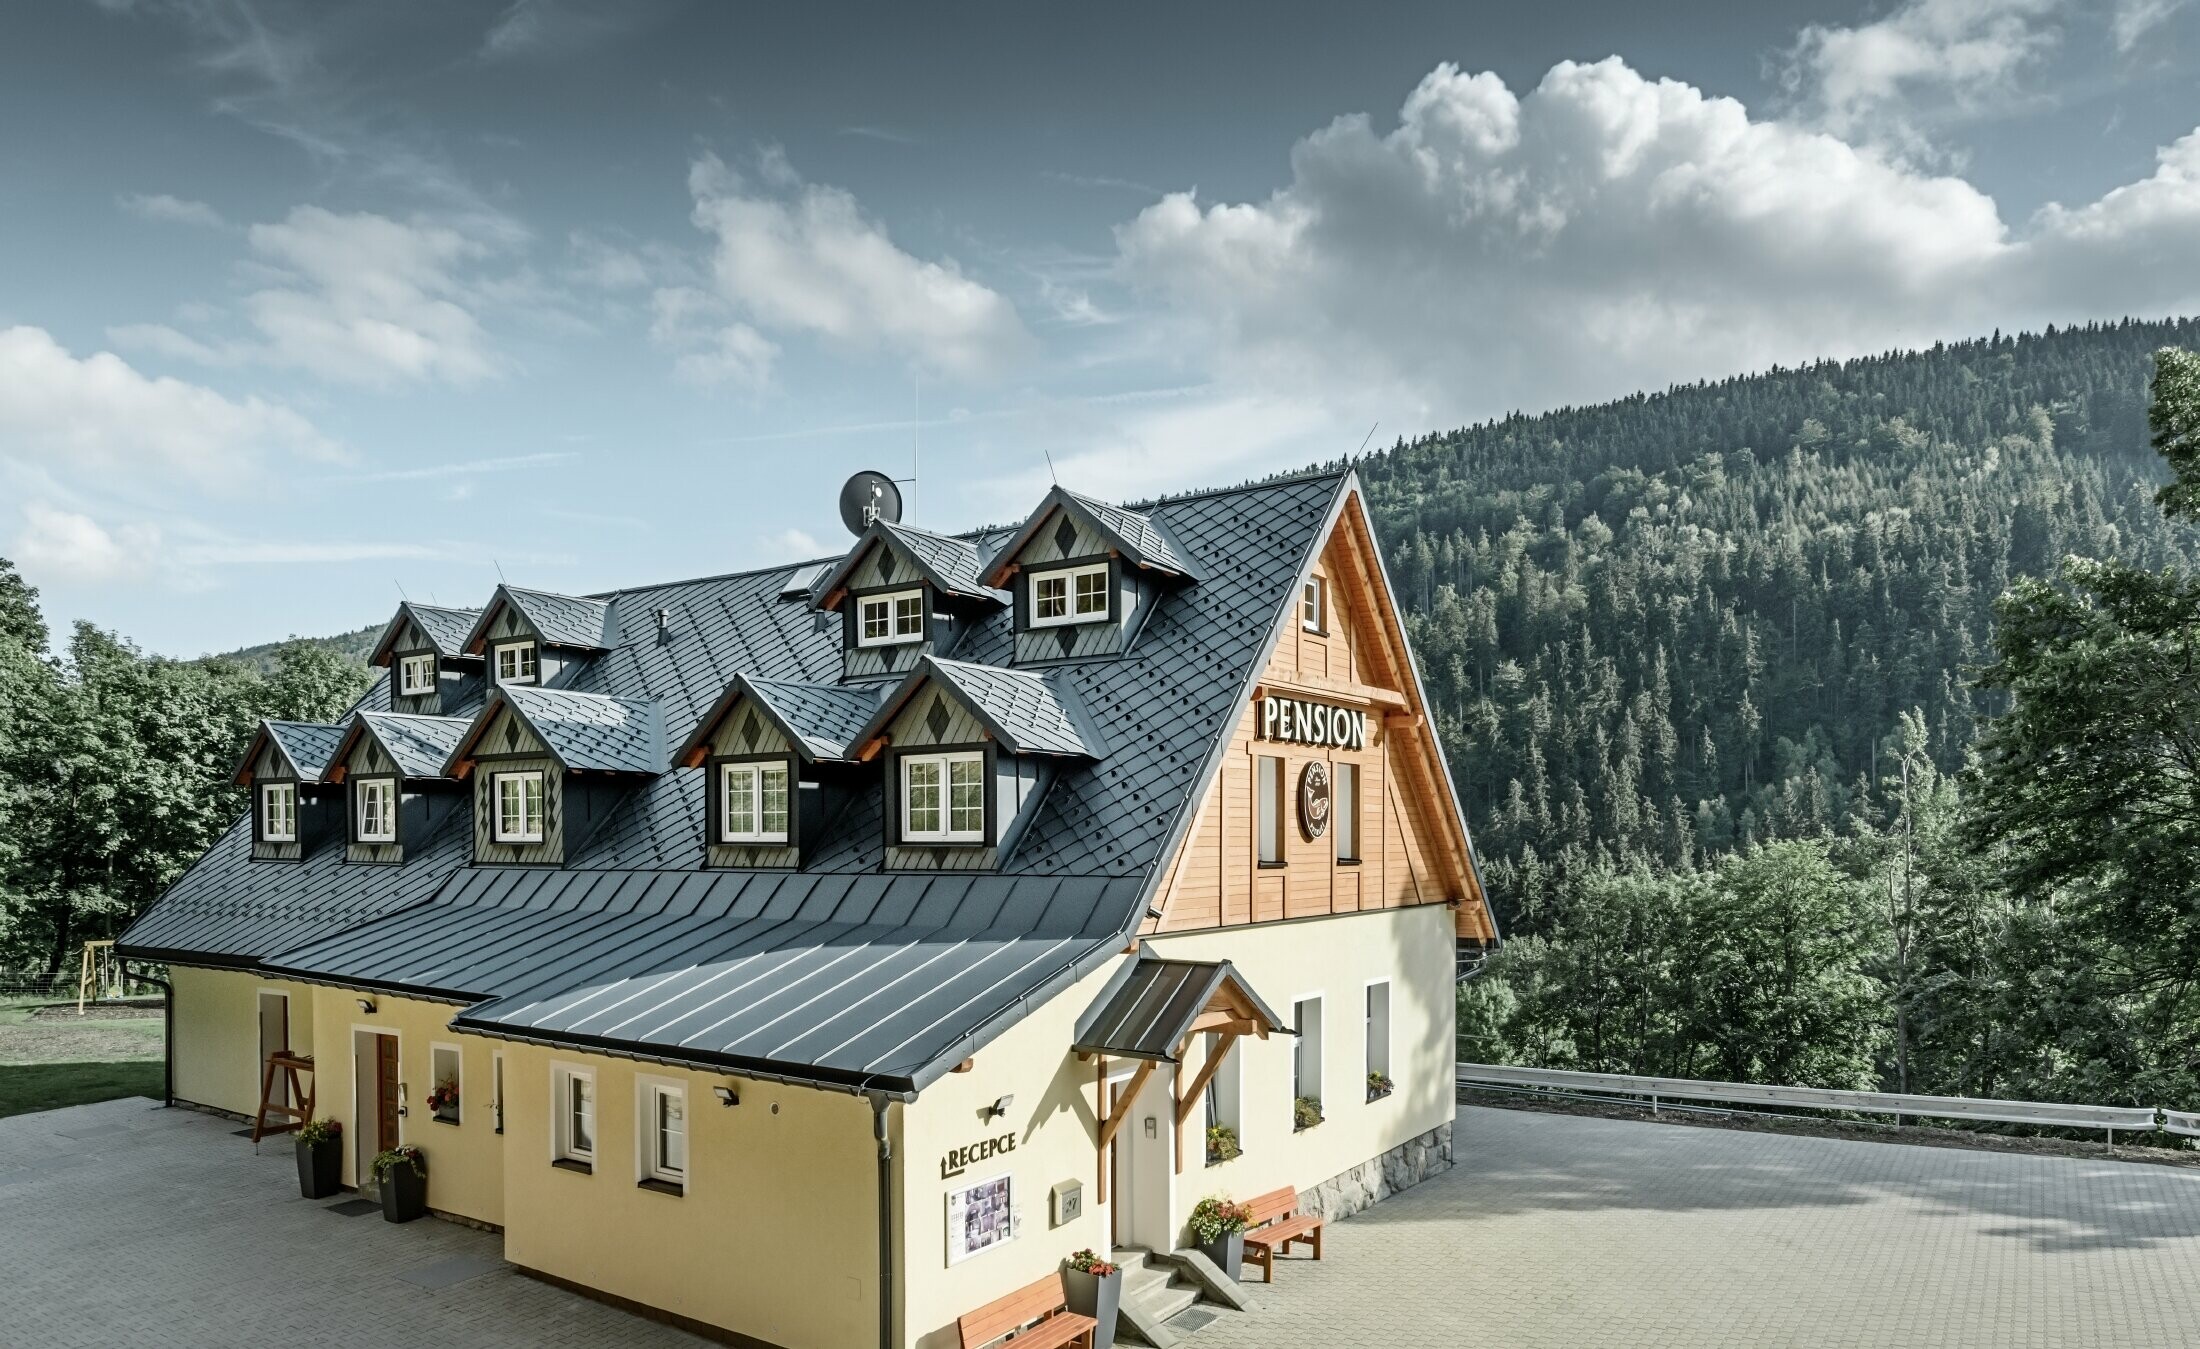 Pensionat i Tjeckien med brant tak och många takkupor täckta med aluminiumtak från PREFA, sicksackmönstrat rombtak med snörasskydd